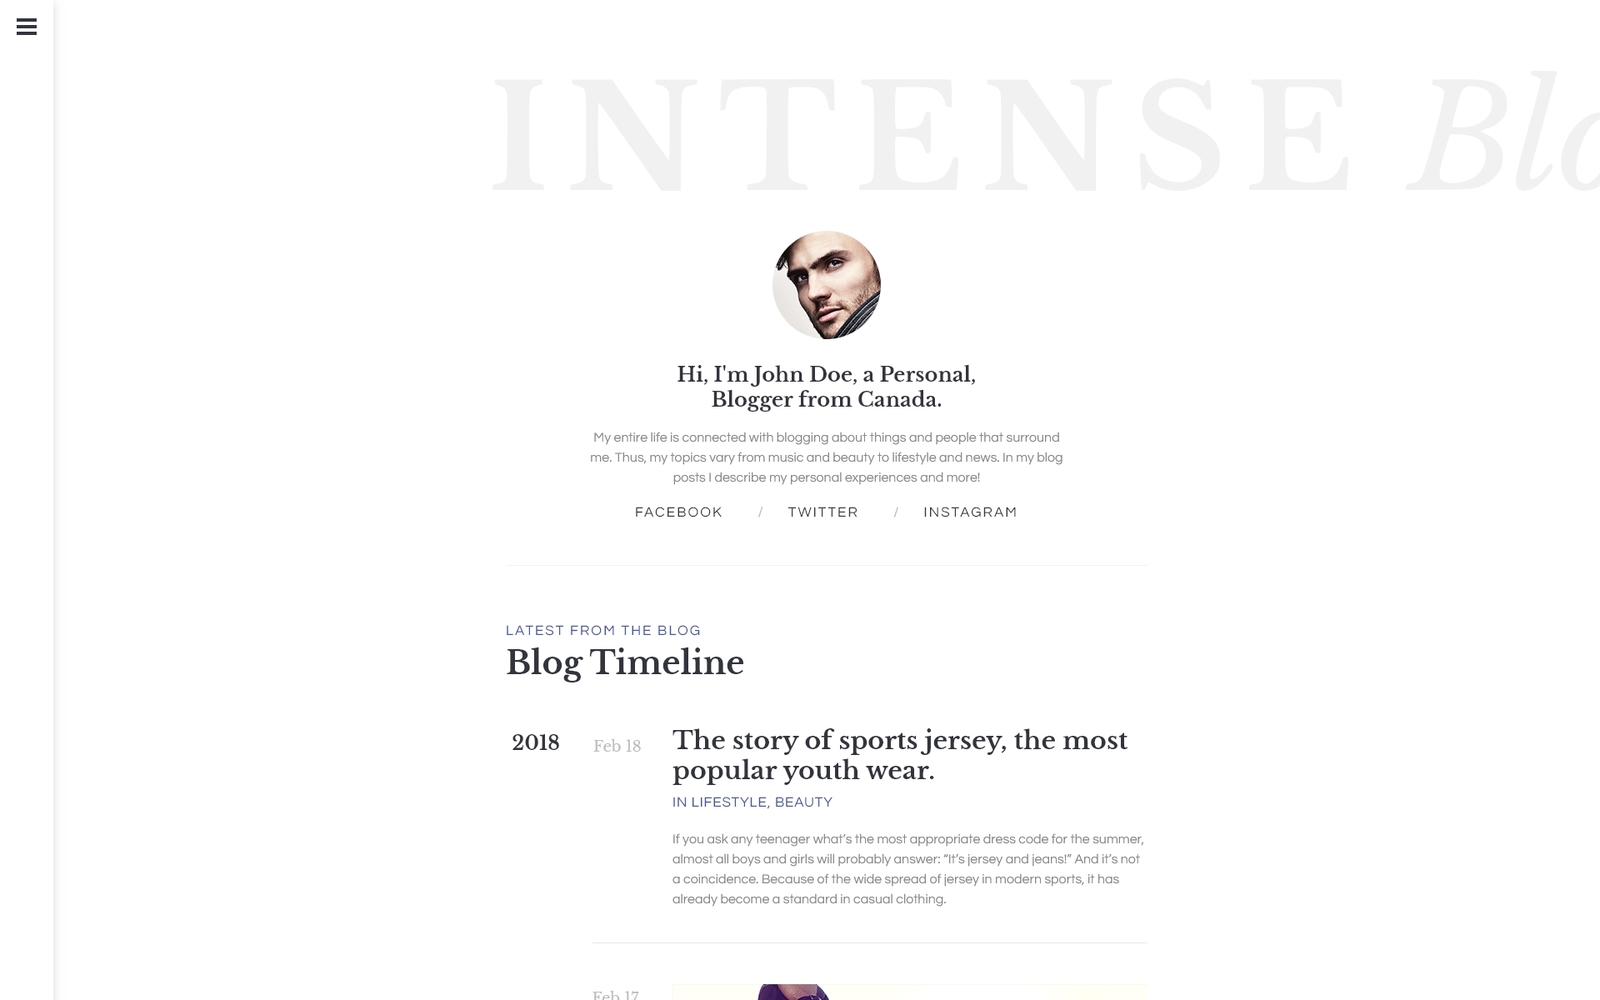 INTENSE Blog Website Template